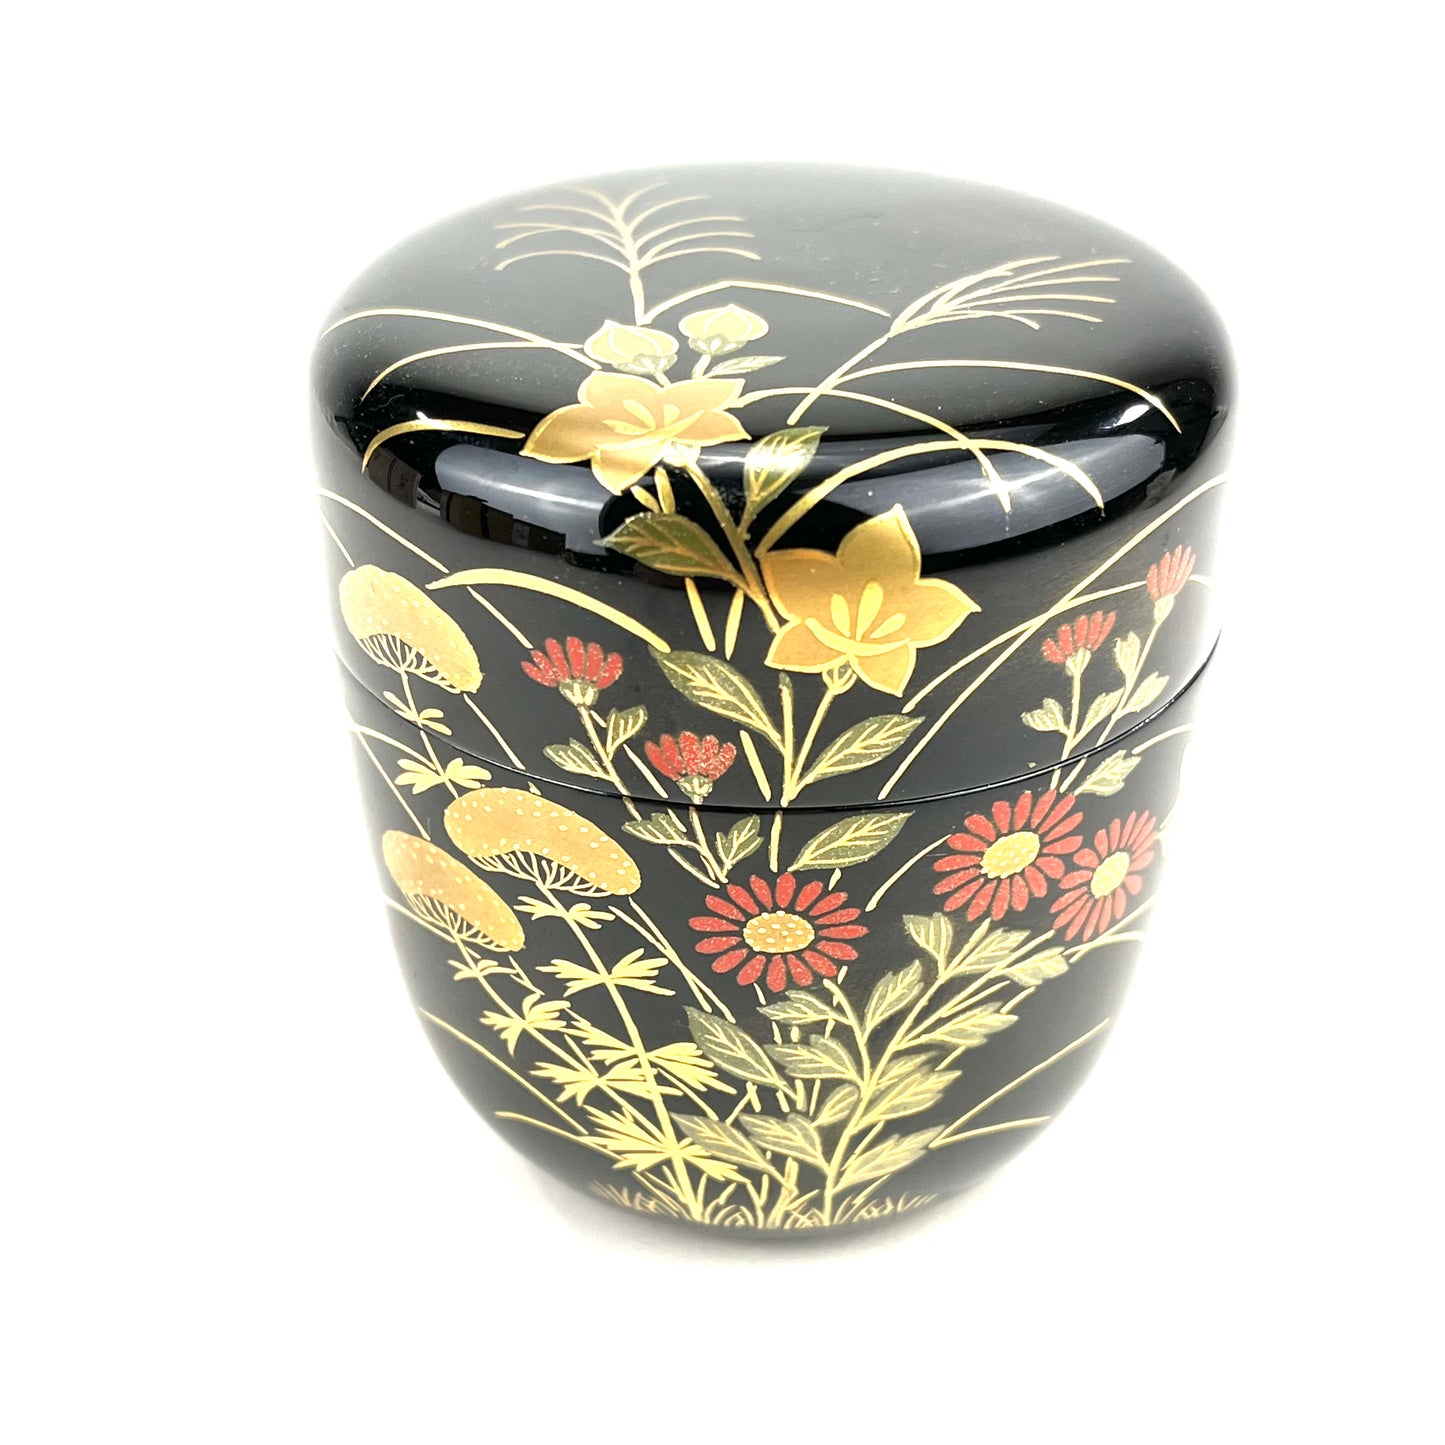 Vintage Japanese Tea Ceremony Natsume Summer Flowers w/ Kiri Box 2 3/4”